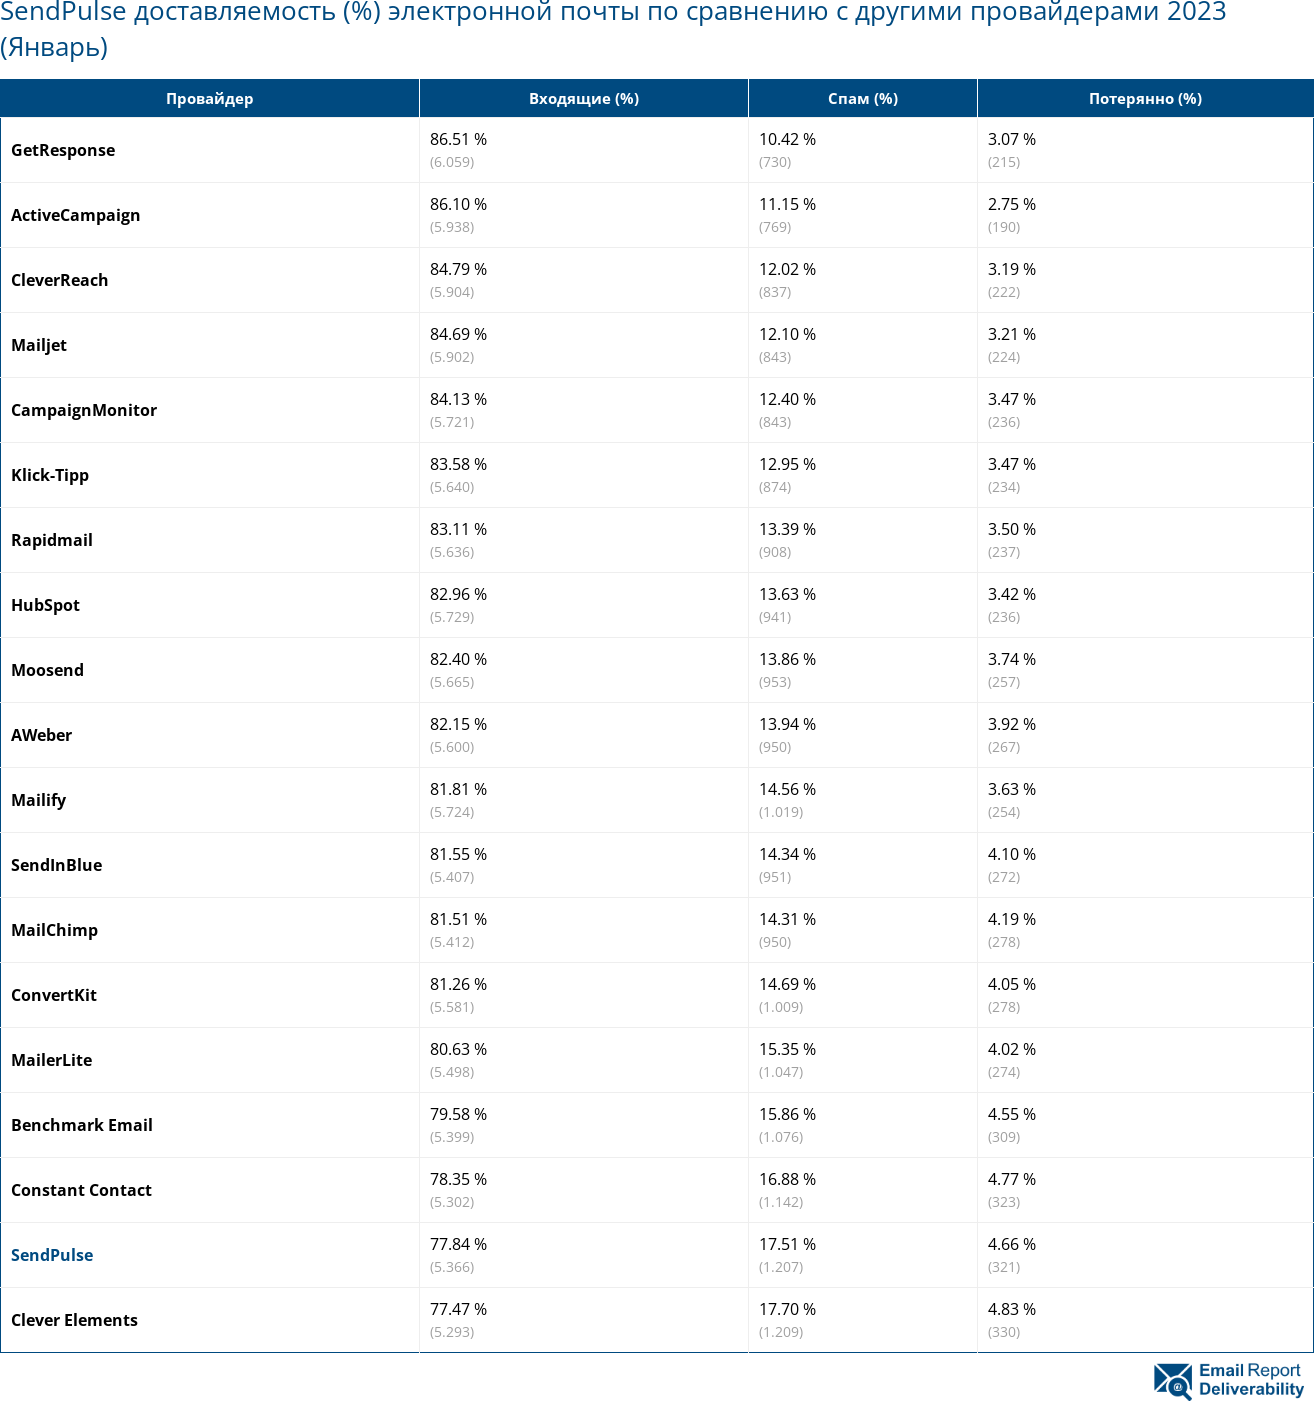 SendPulse доставляемость (%) электронной почты по сравнению с другими провайдерами 2023 (Январь)